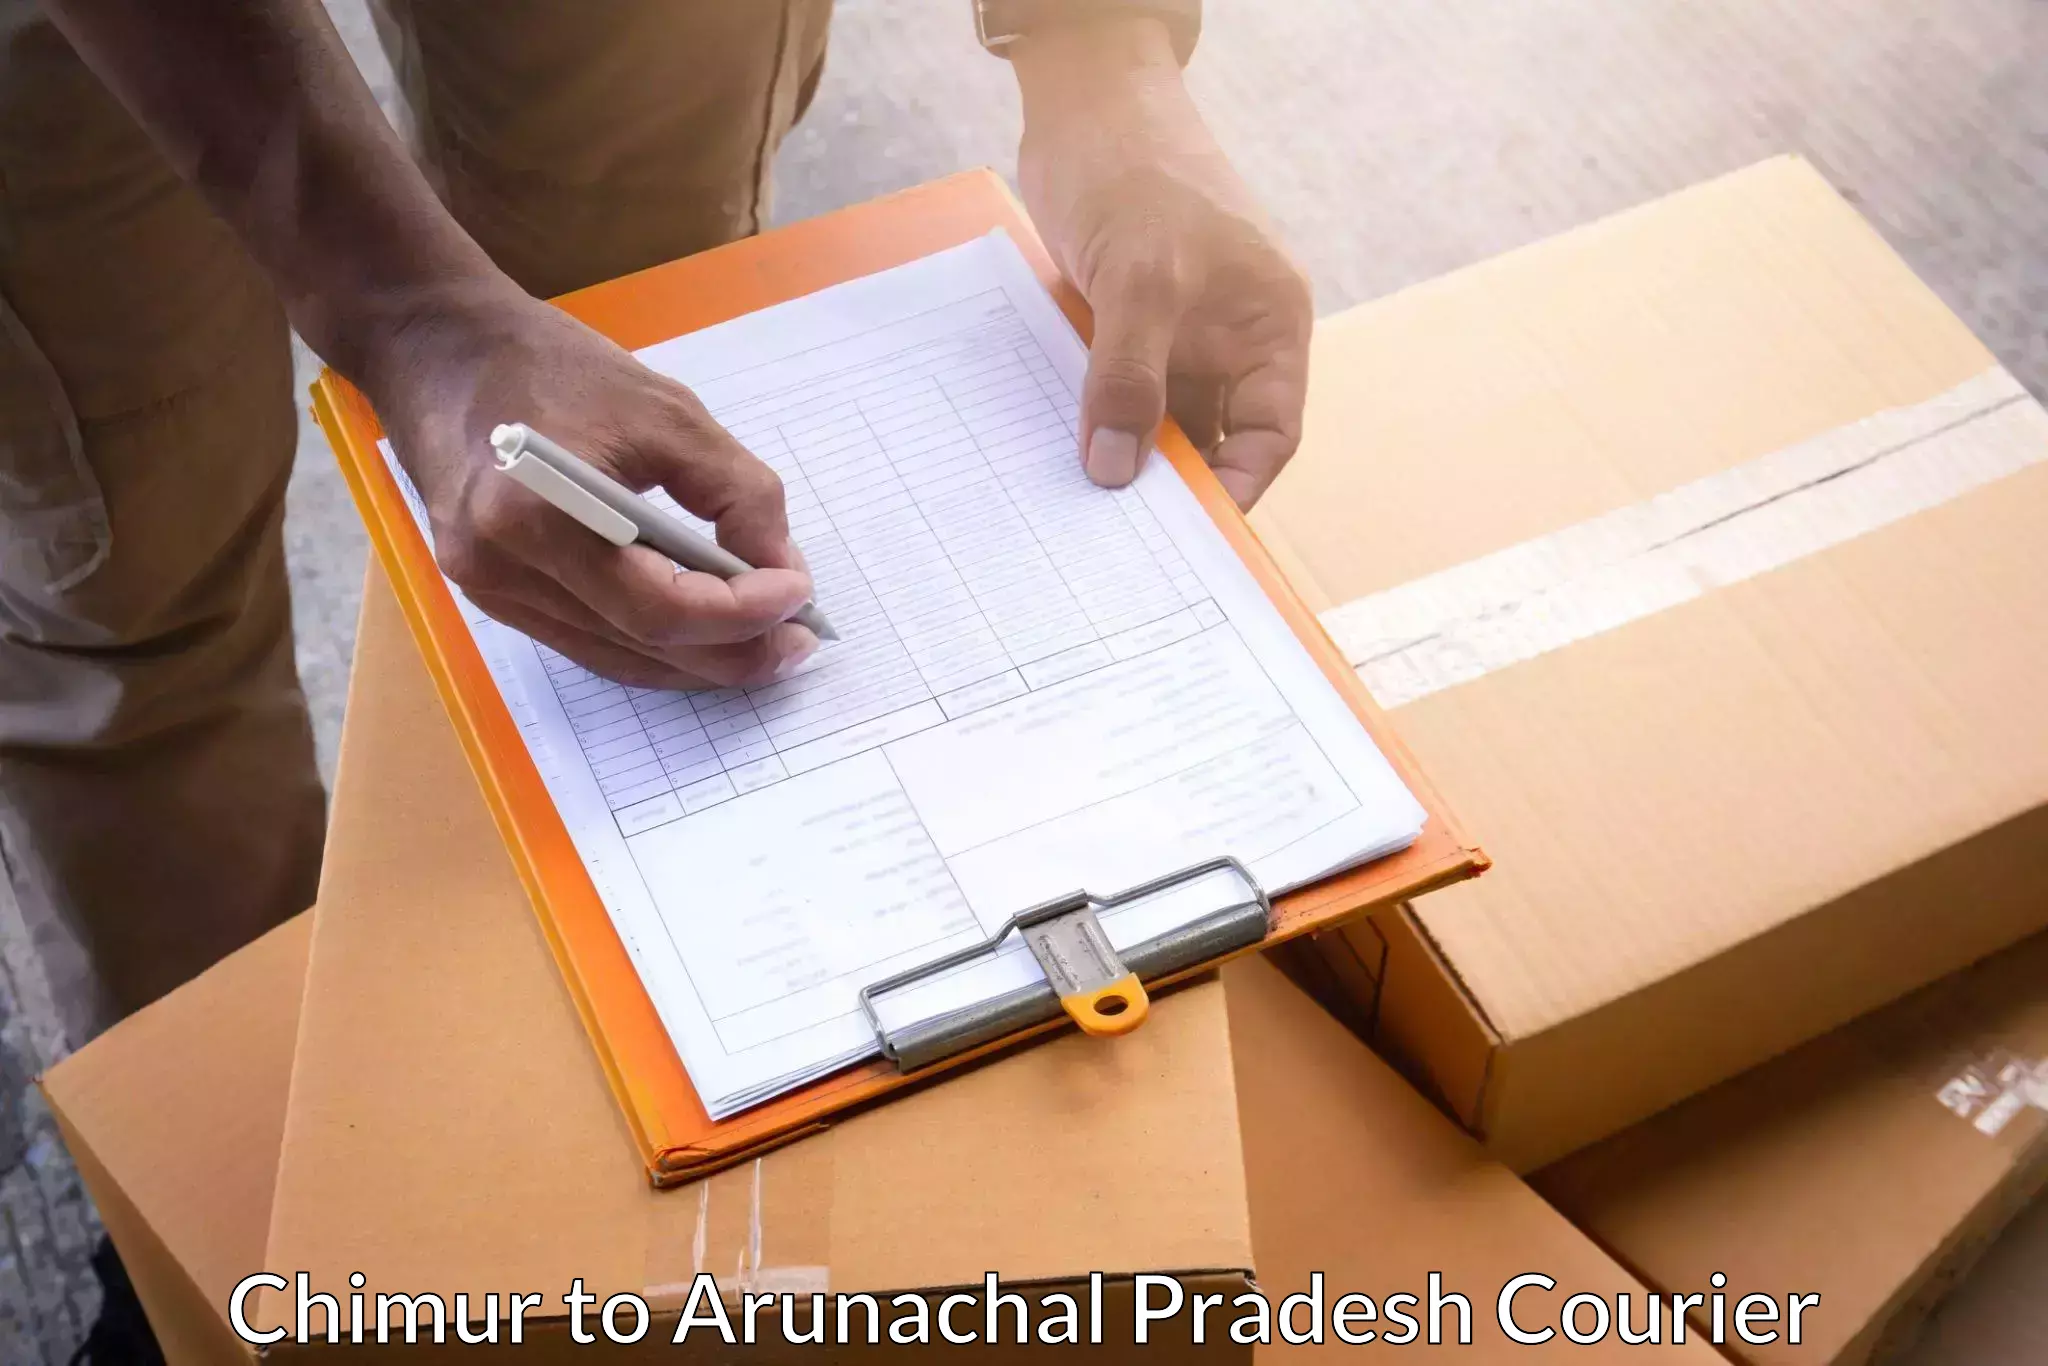 24-hour courier service in Chimur to Arunachal Pradesh